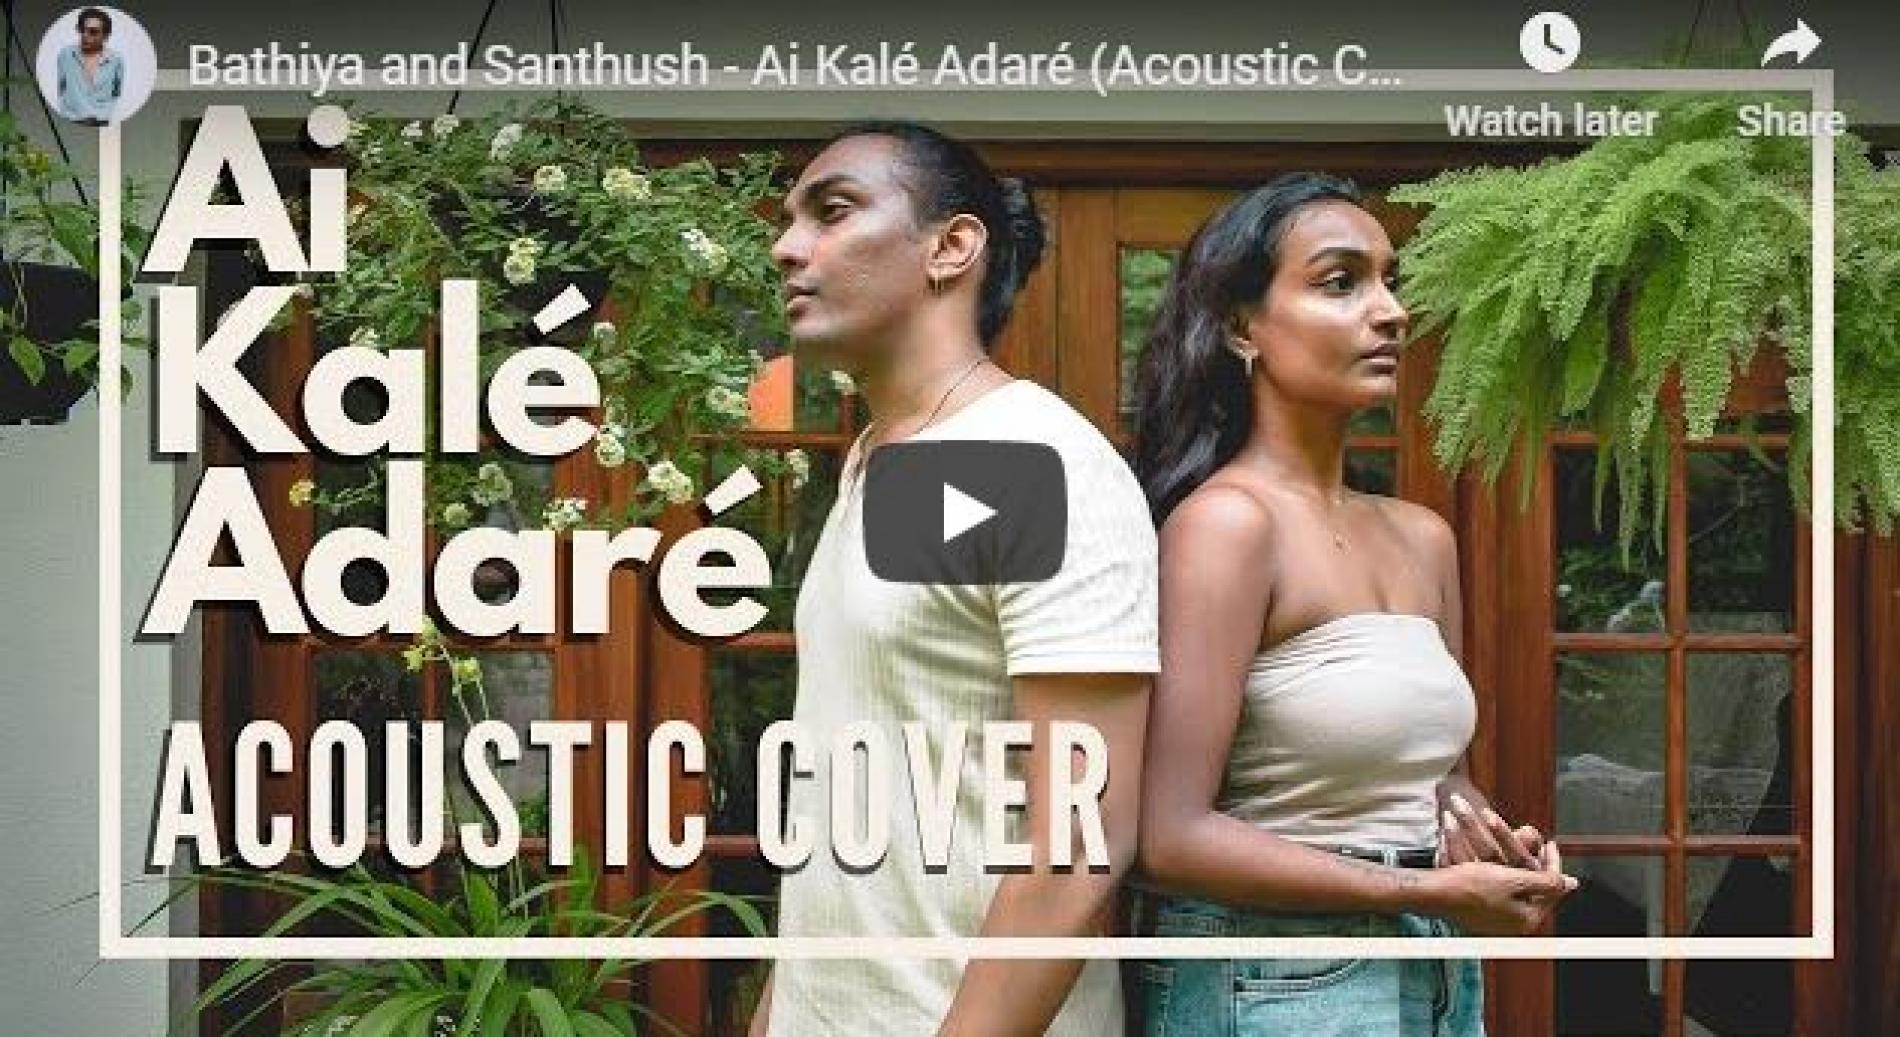 Bathiya and Santhush – Ai Kalé Adaré (Acoustic Cover by Ryan & Senani)